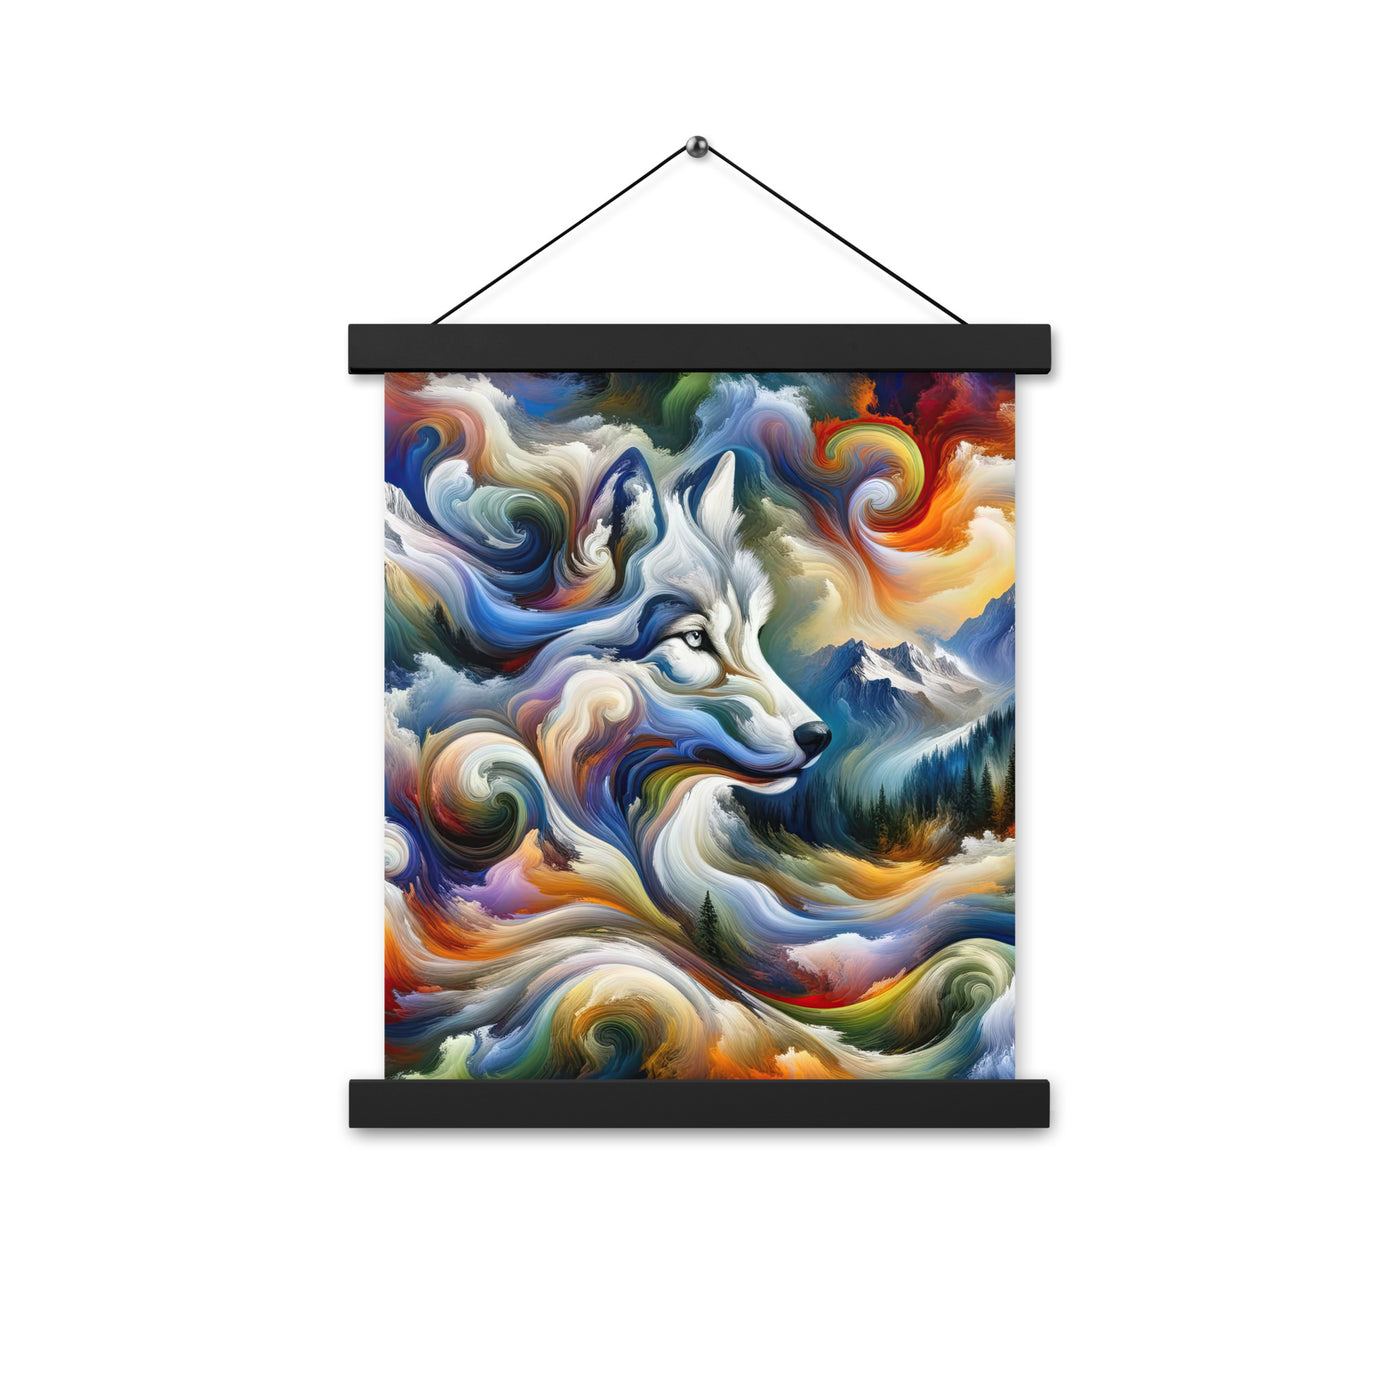 Abstraktes Alpen Gemälde: Wirbelnde Farben und Majestätischer Wolf, Silhouette (AN) - Premium Poster mit Aufhängung xxx yyy zzz 27.9 x 35.6 cm